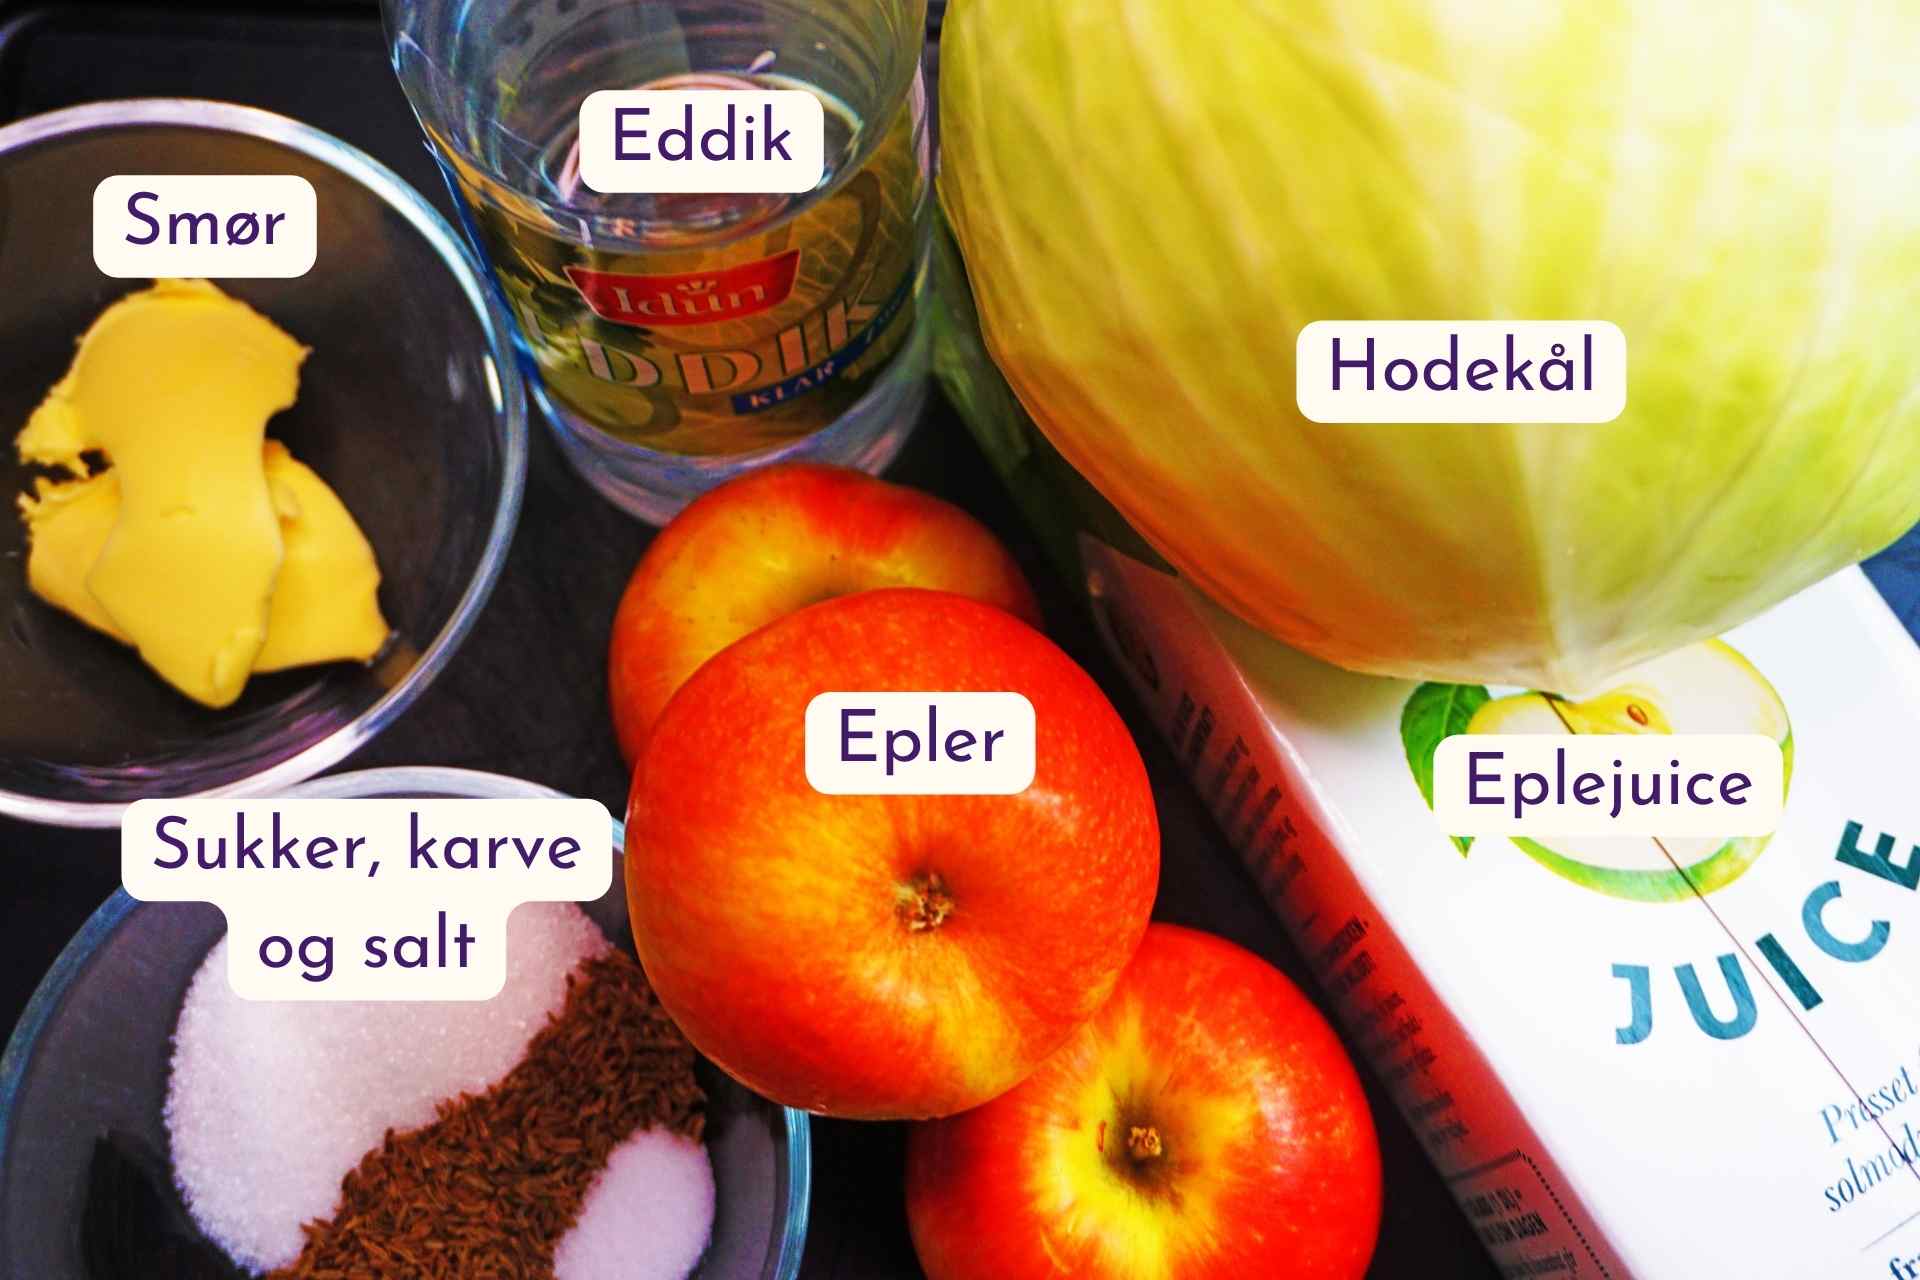 For hjemmelaget surkål trenger du hodekål, eplejuice, epler, smør, eddik, sukker, karve og salt